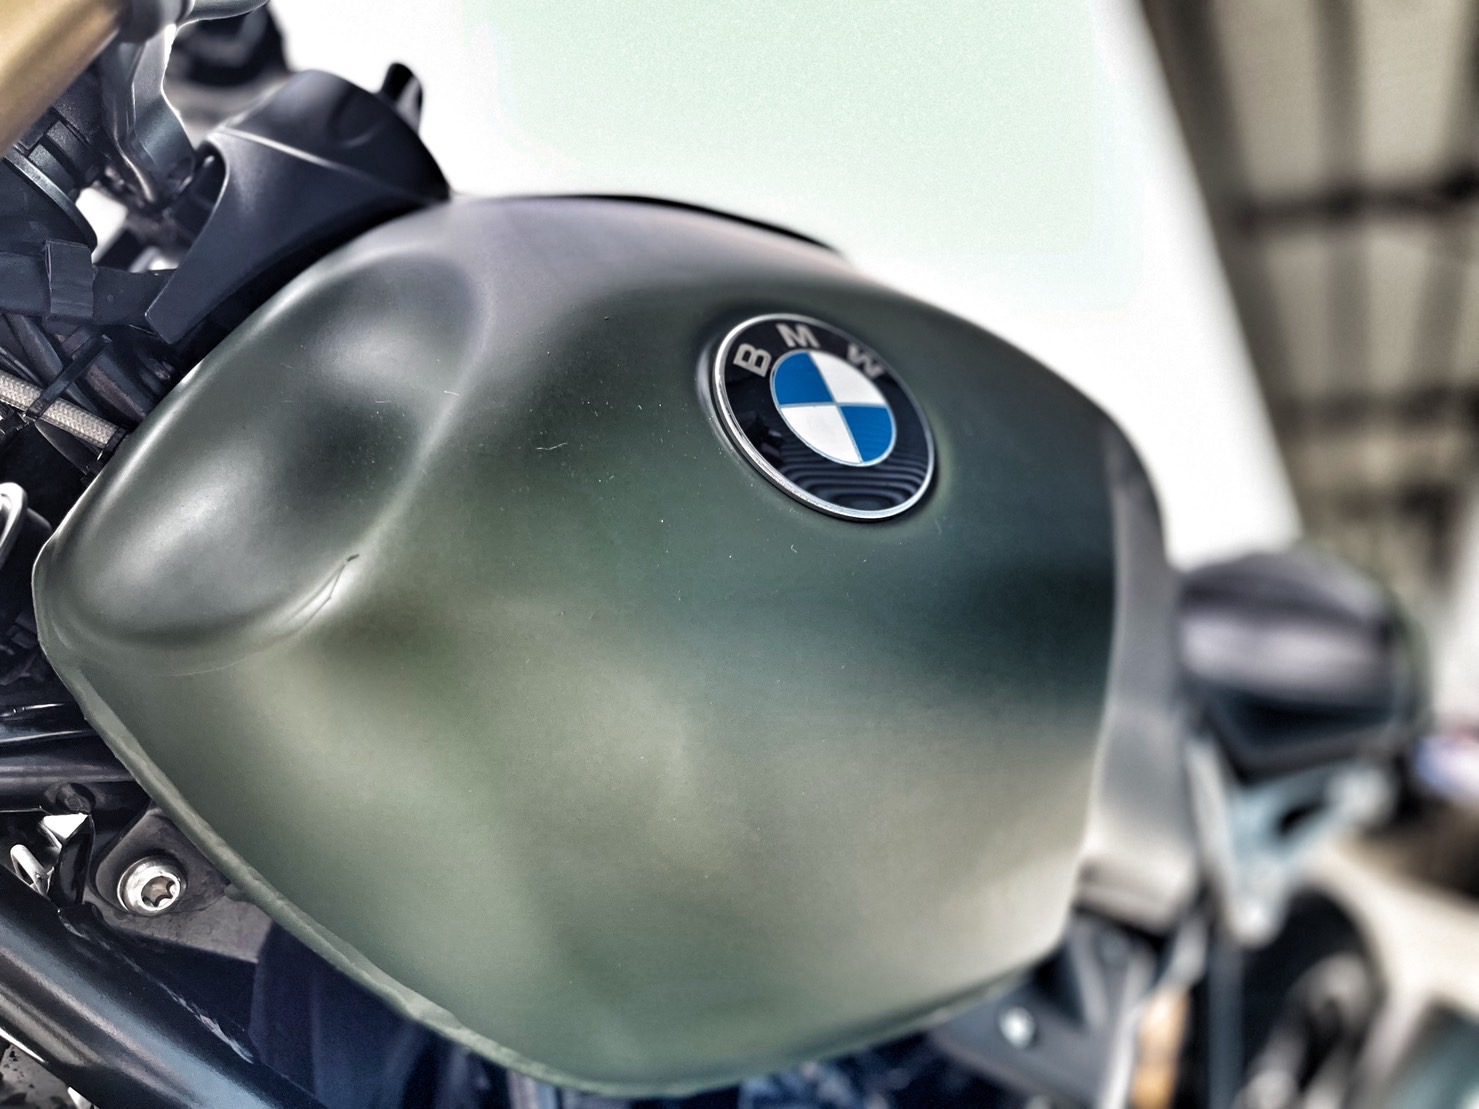 BMW R nineT - 中古/二手車出售中 無摔無事故 視覺改裝 里程保證 小資族二手重機買賣 | 小資族二手重機買賣